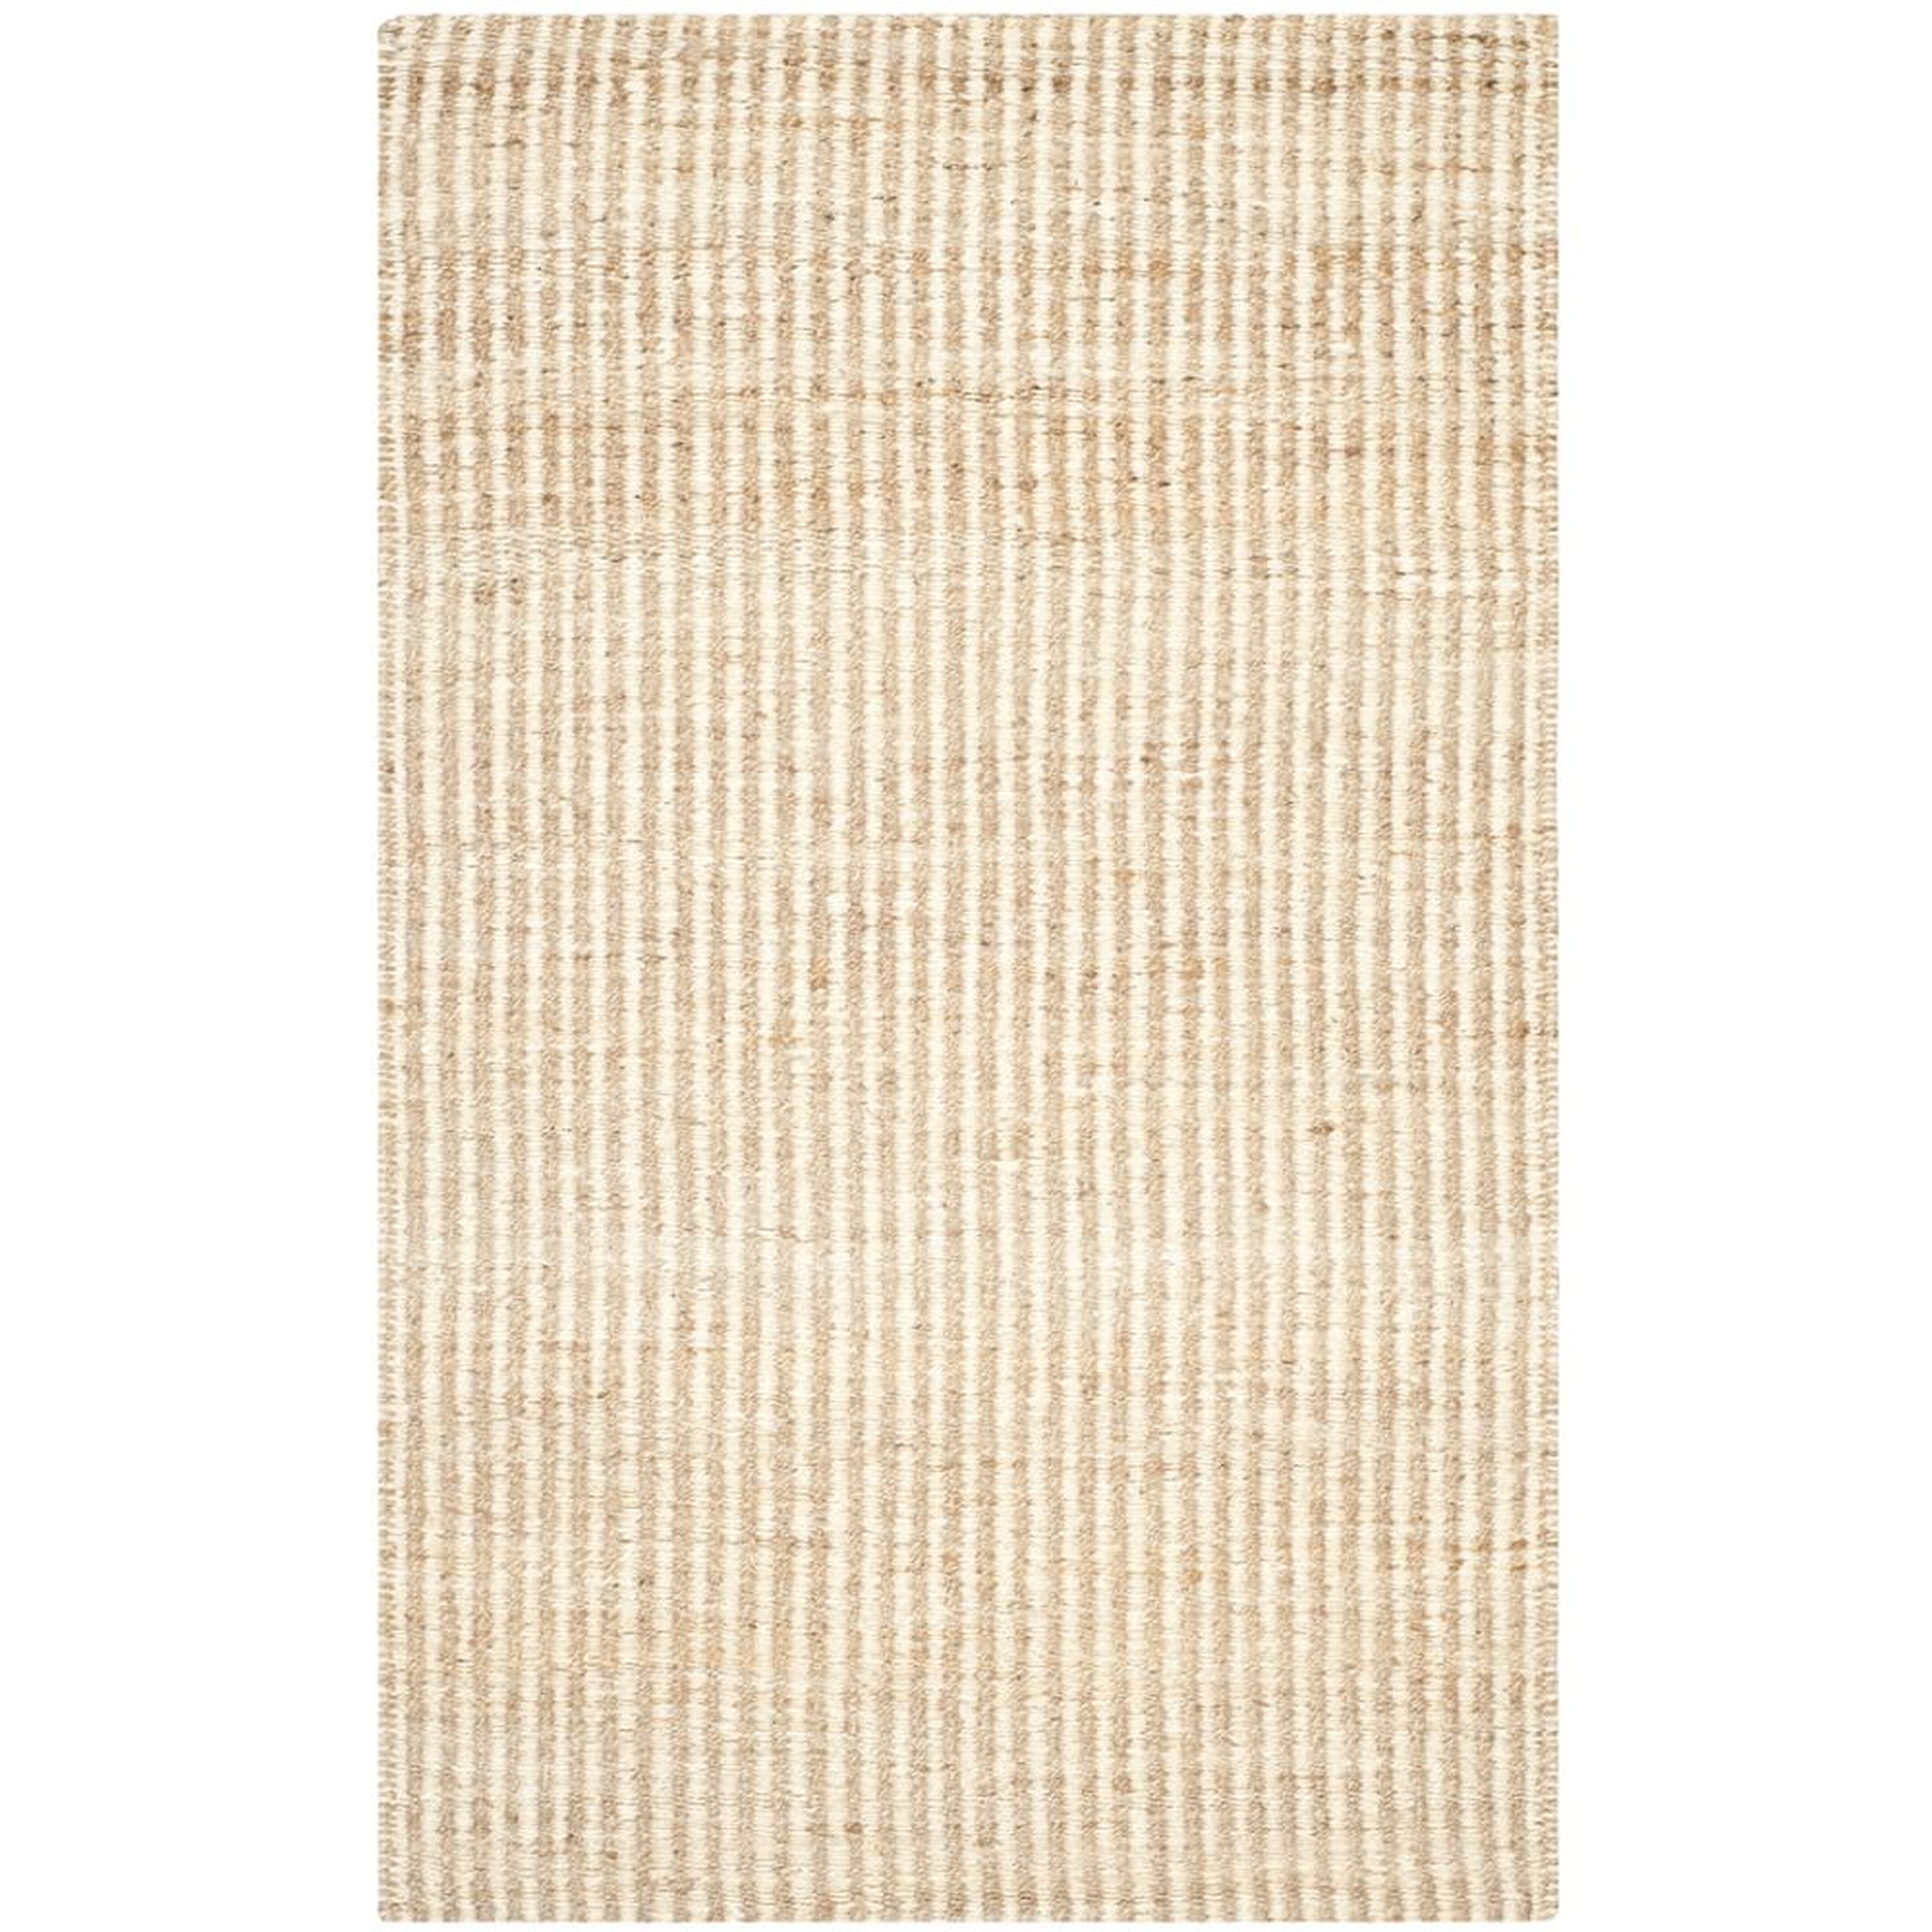 Washed Stripes Jute Rug, 6x9Natural/Ivory - West Elm